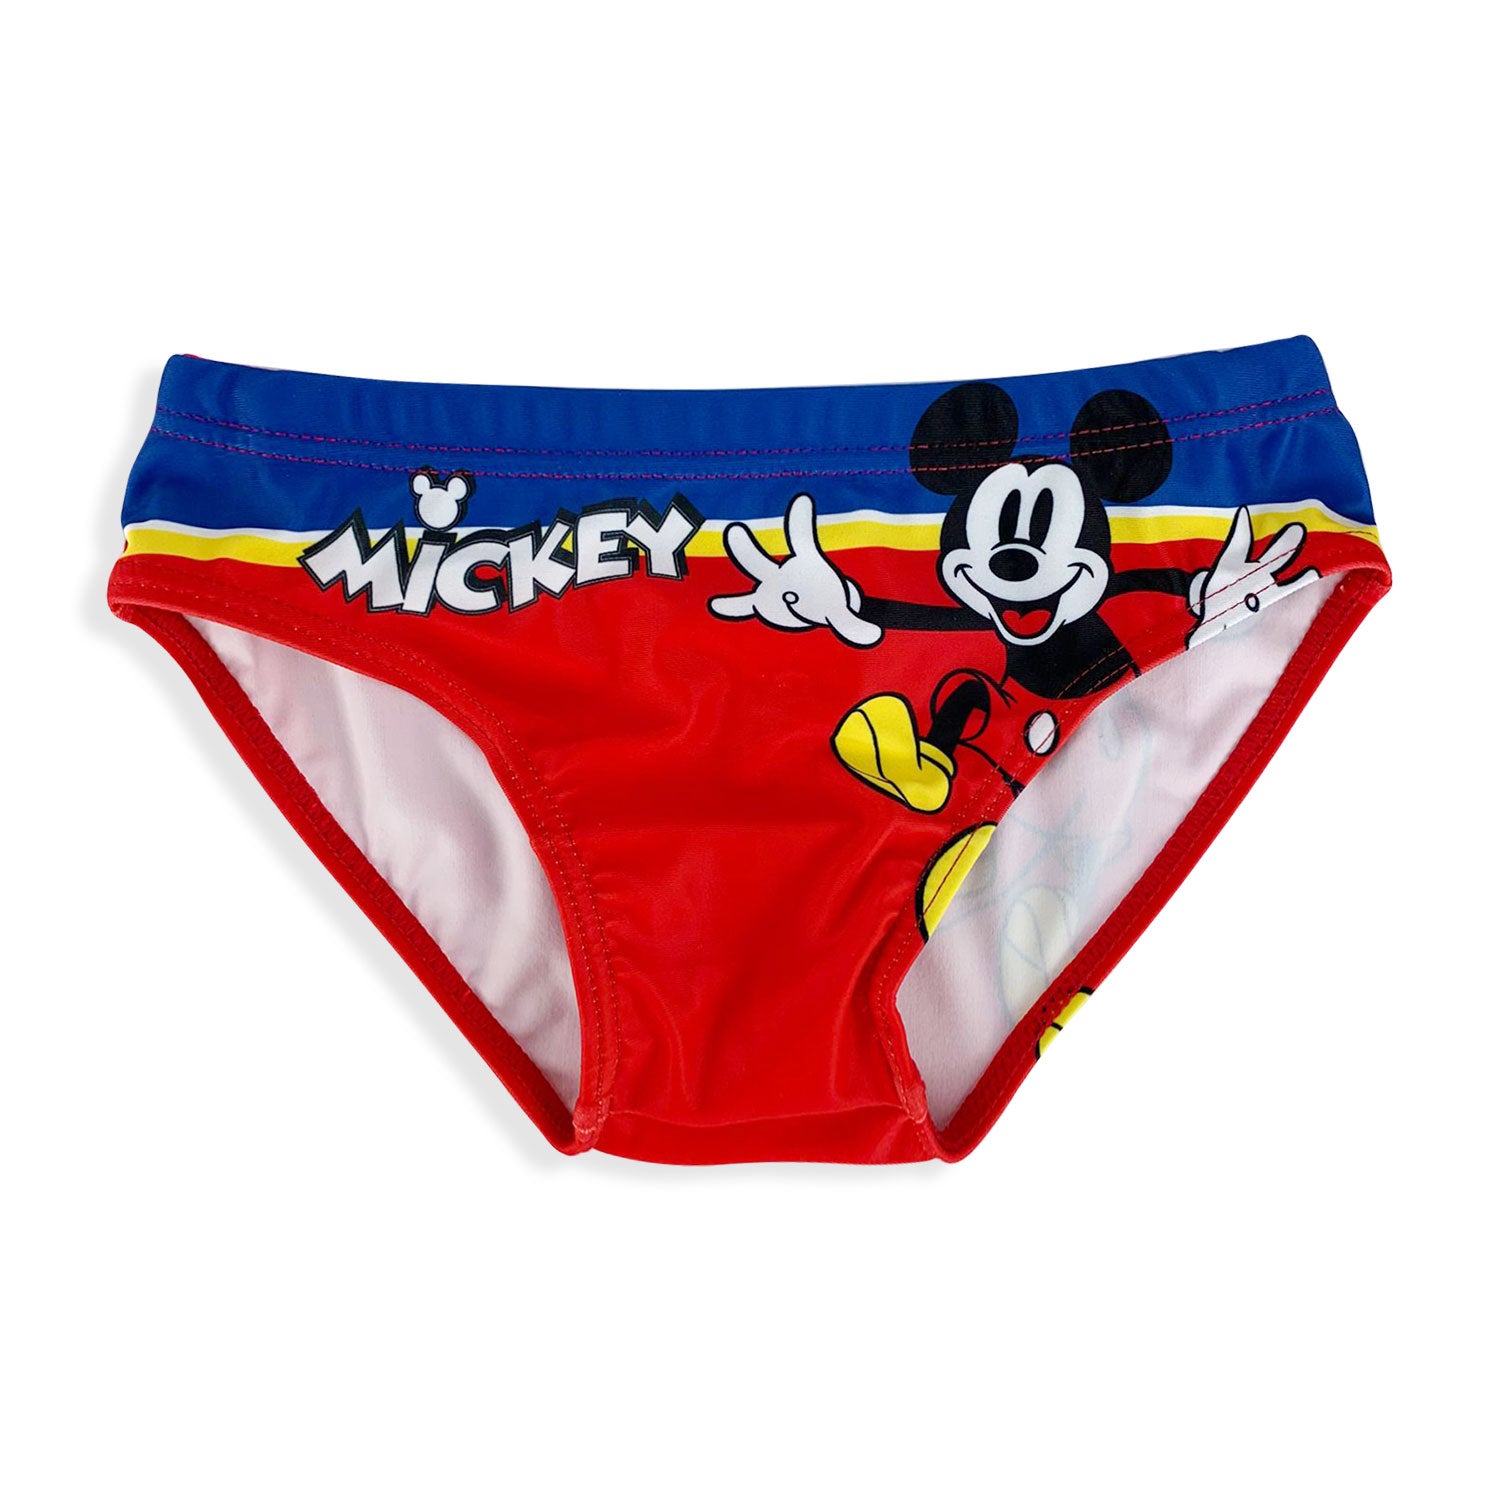 Costume mare ufficiale Disney Mickey Mouse per bambino slip piscina 5356